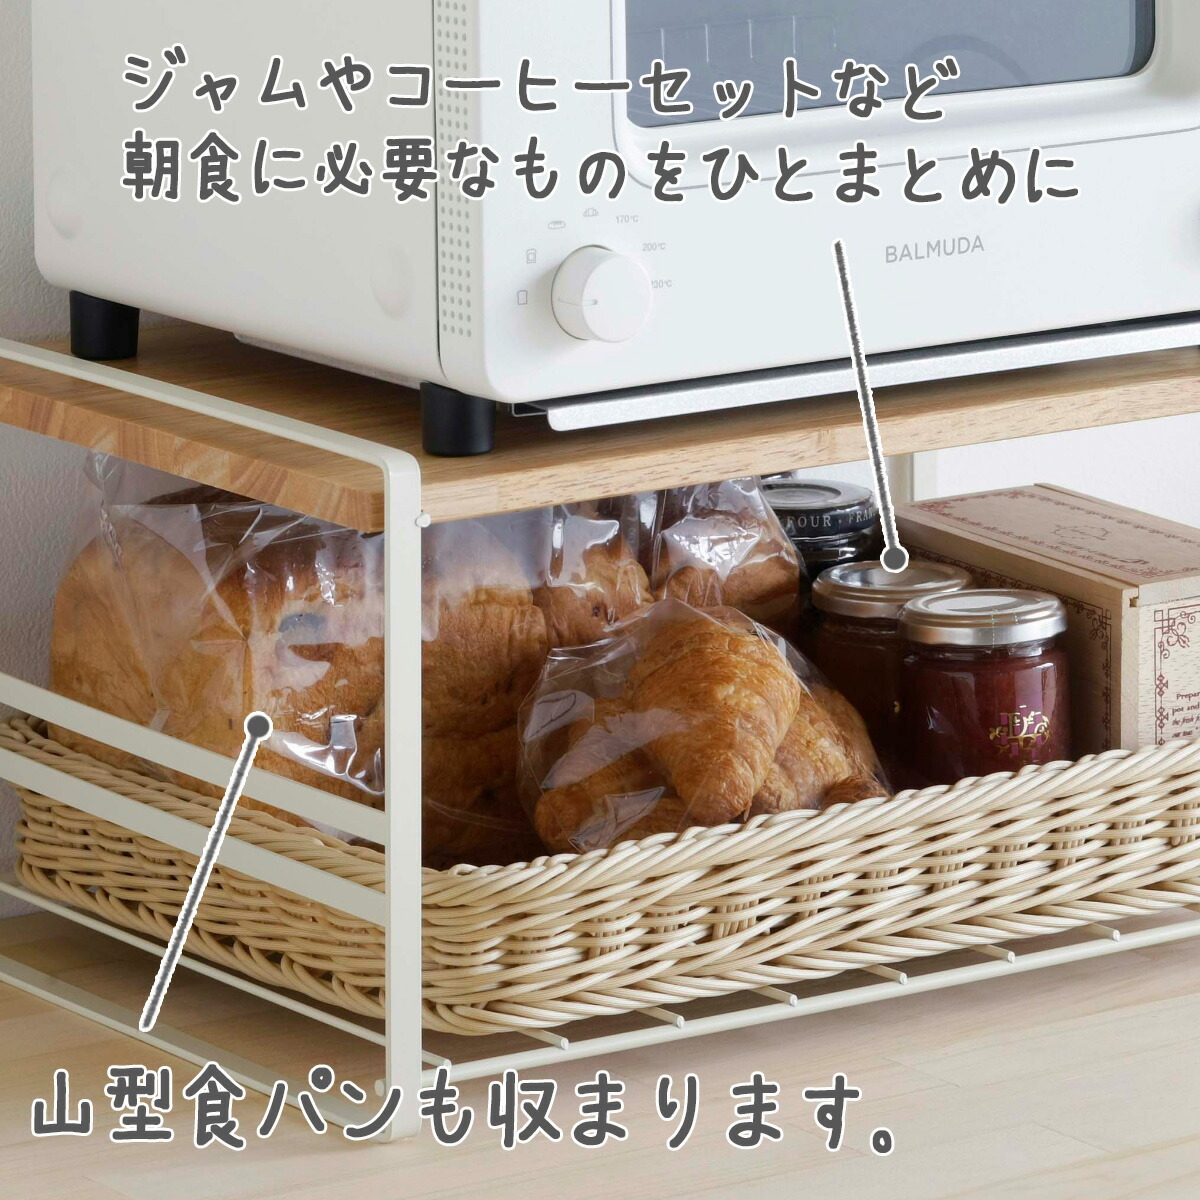 木棚 トースター ラック ホワイト 日本製 スチール製 オーブン レンジ 